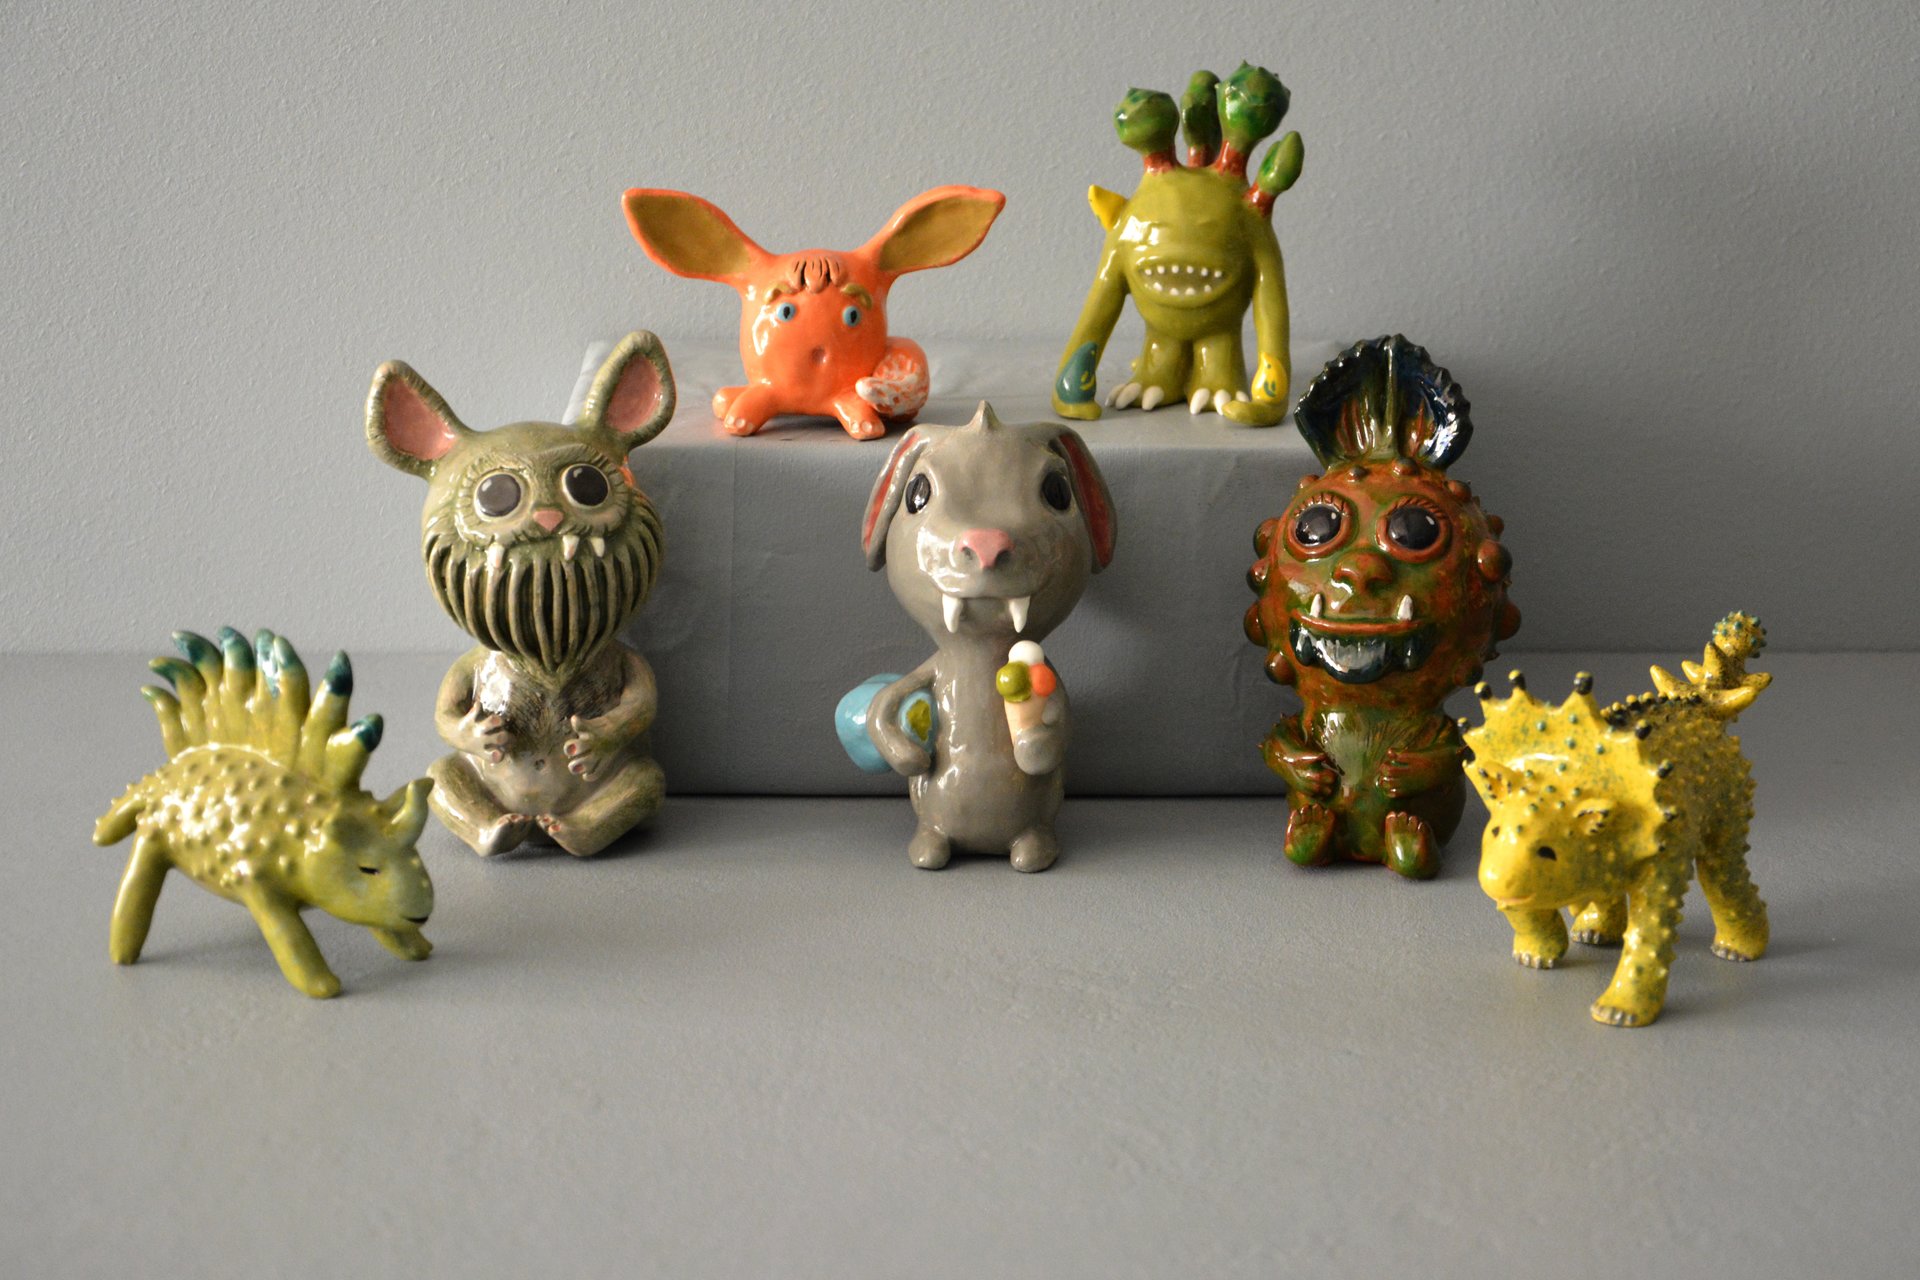 Ceramic fantastic creatures